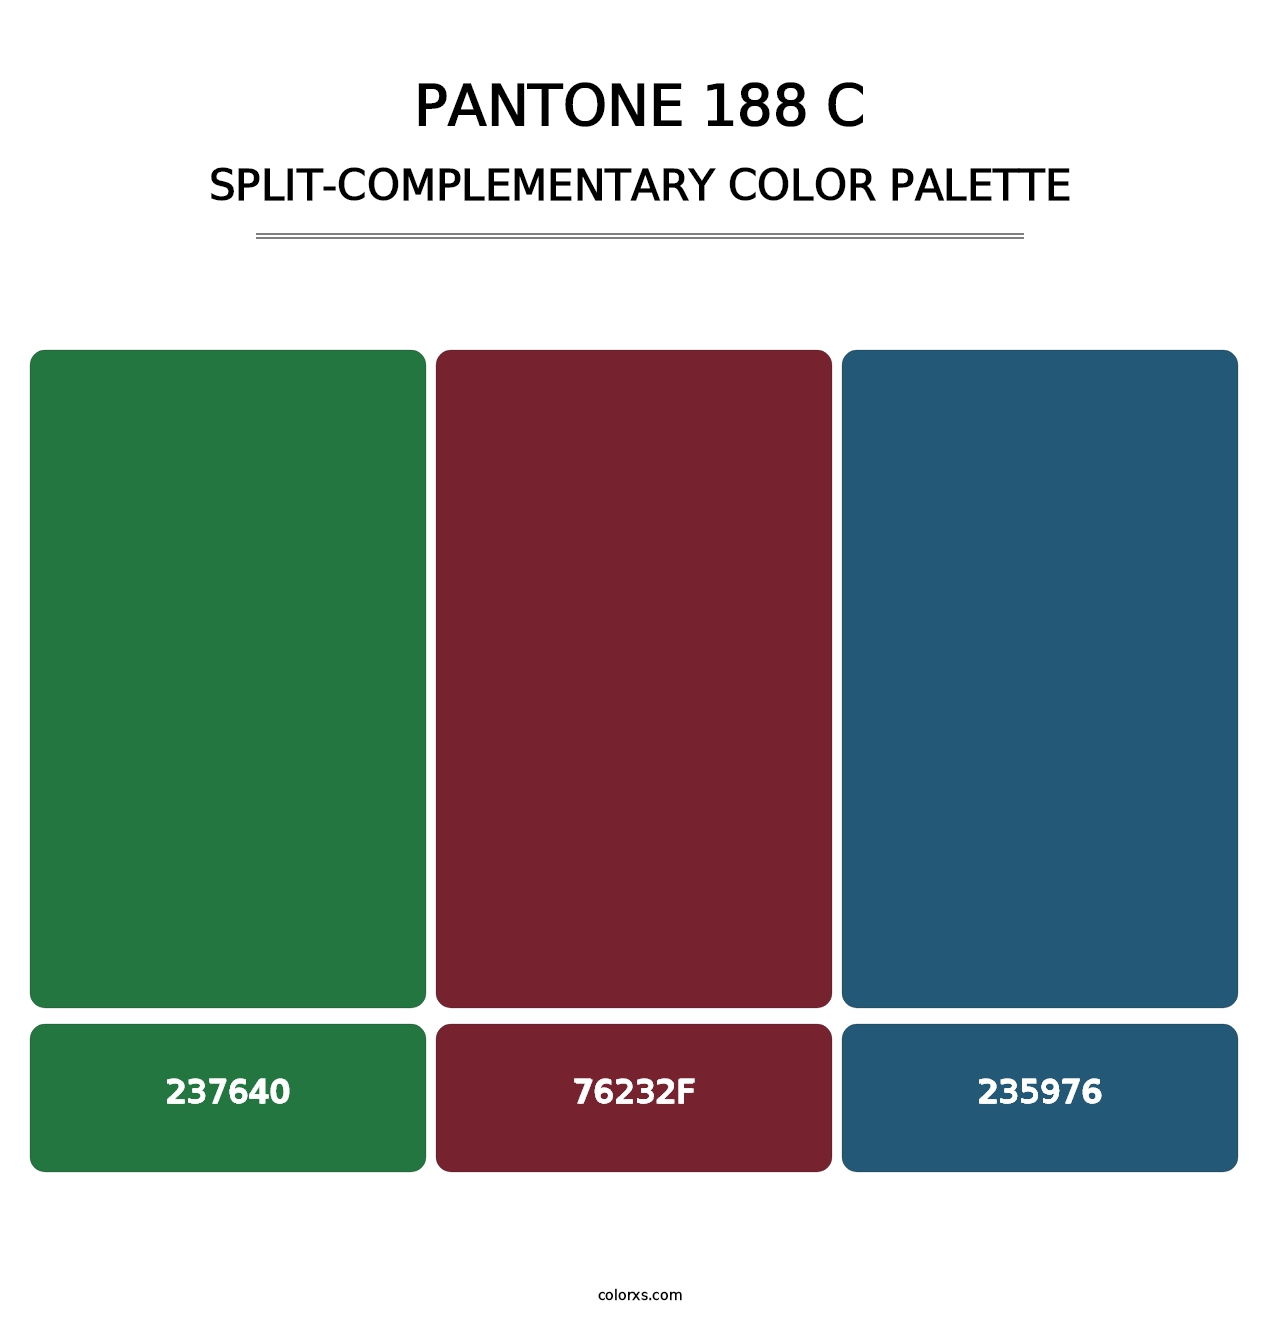 PANTONE 188 C - Split-Complementary Color Palette